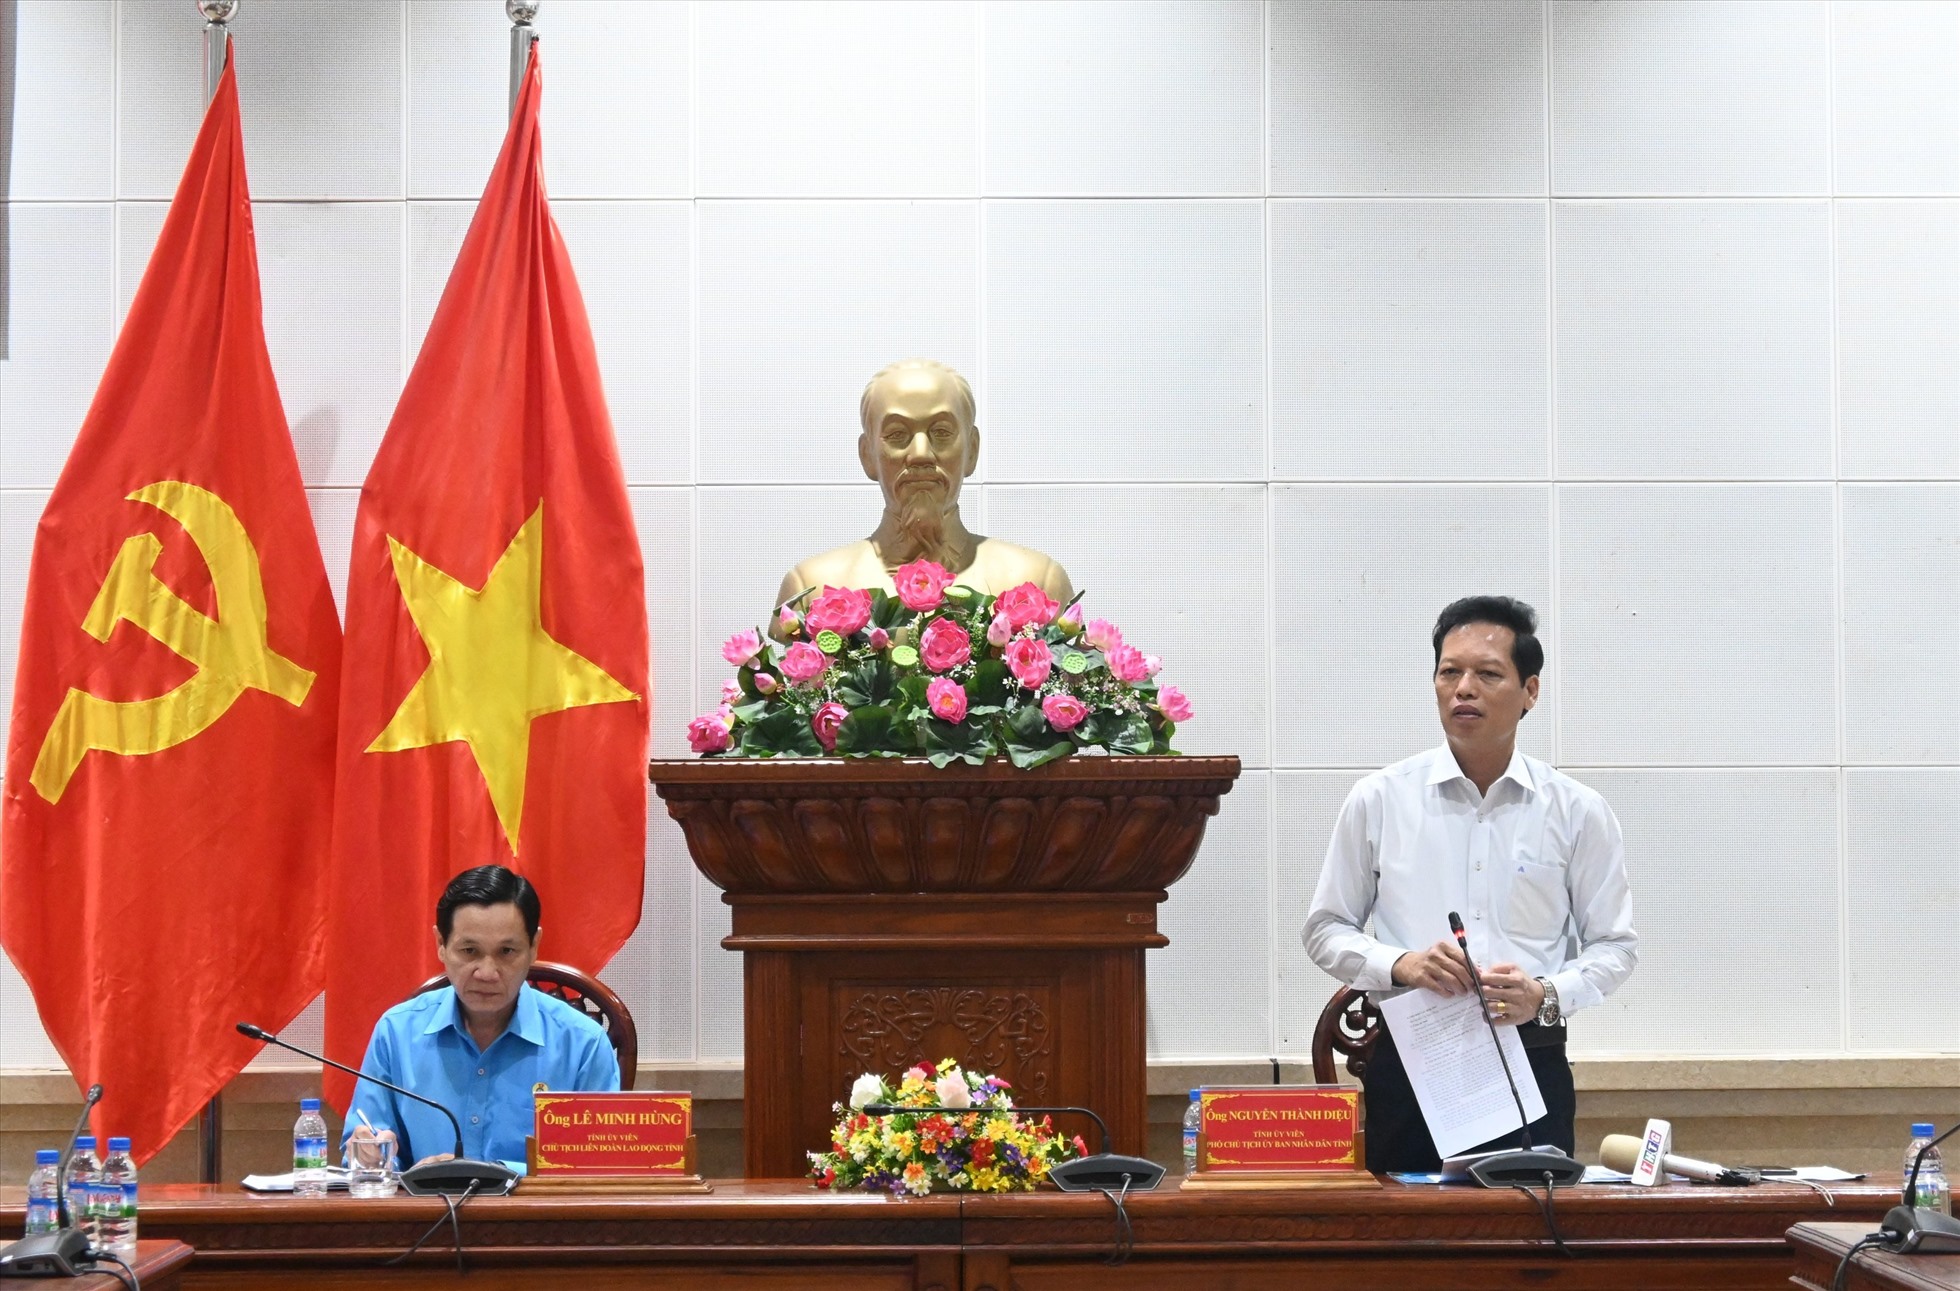 Phó Chủ tịch UBND tỉnh Tiền Giang Nguyễn Thành Diệu (đứng bên phải) phát biểu kết luận tại buổi làm việc. Ảnh: Thành Nhân